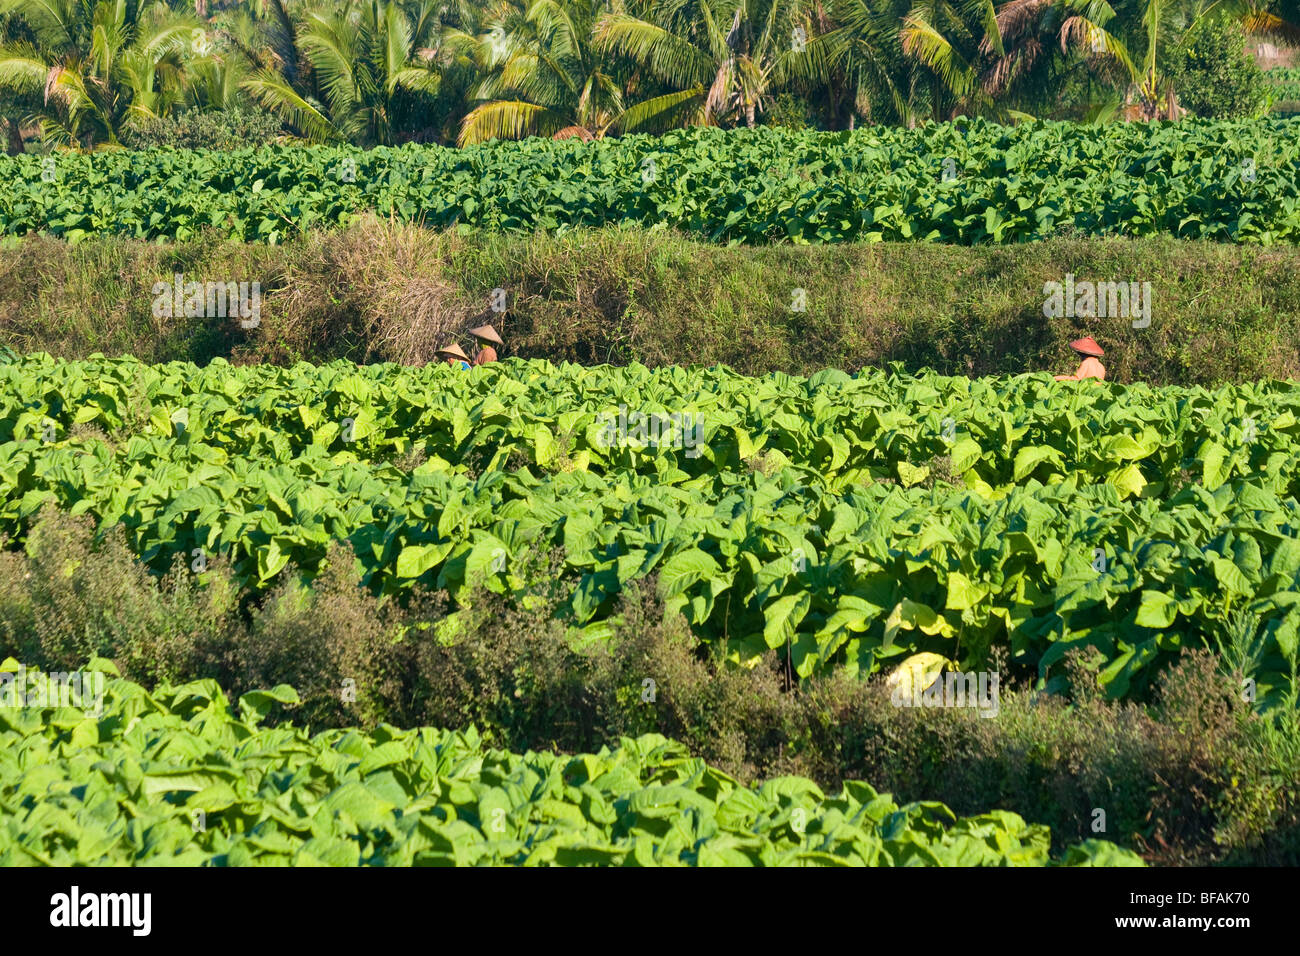 Tobacco field in Nusa Tenggara on Lombok Island in Indonesia Stock Photo